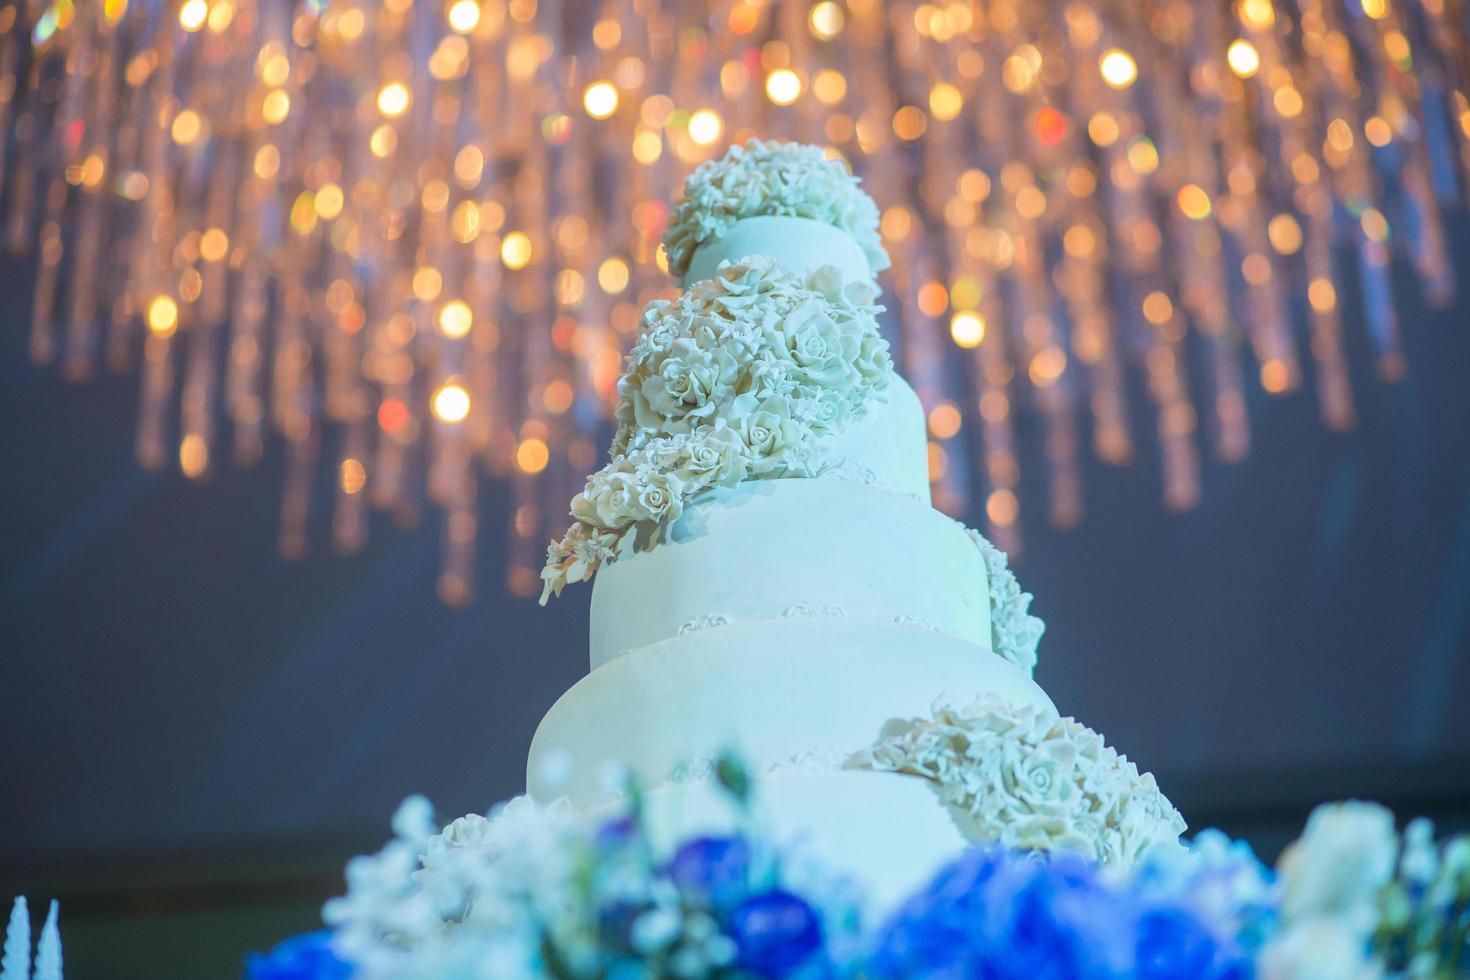 bolo de casamento branco com flor foto